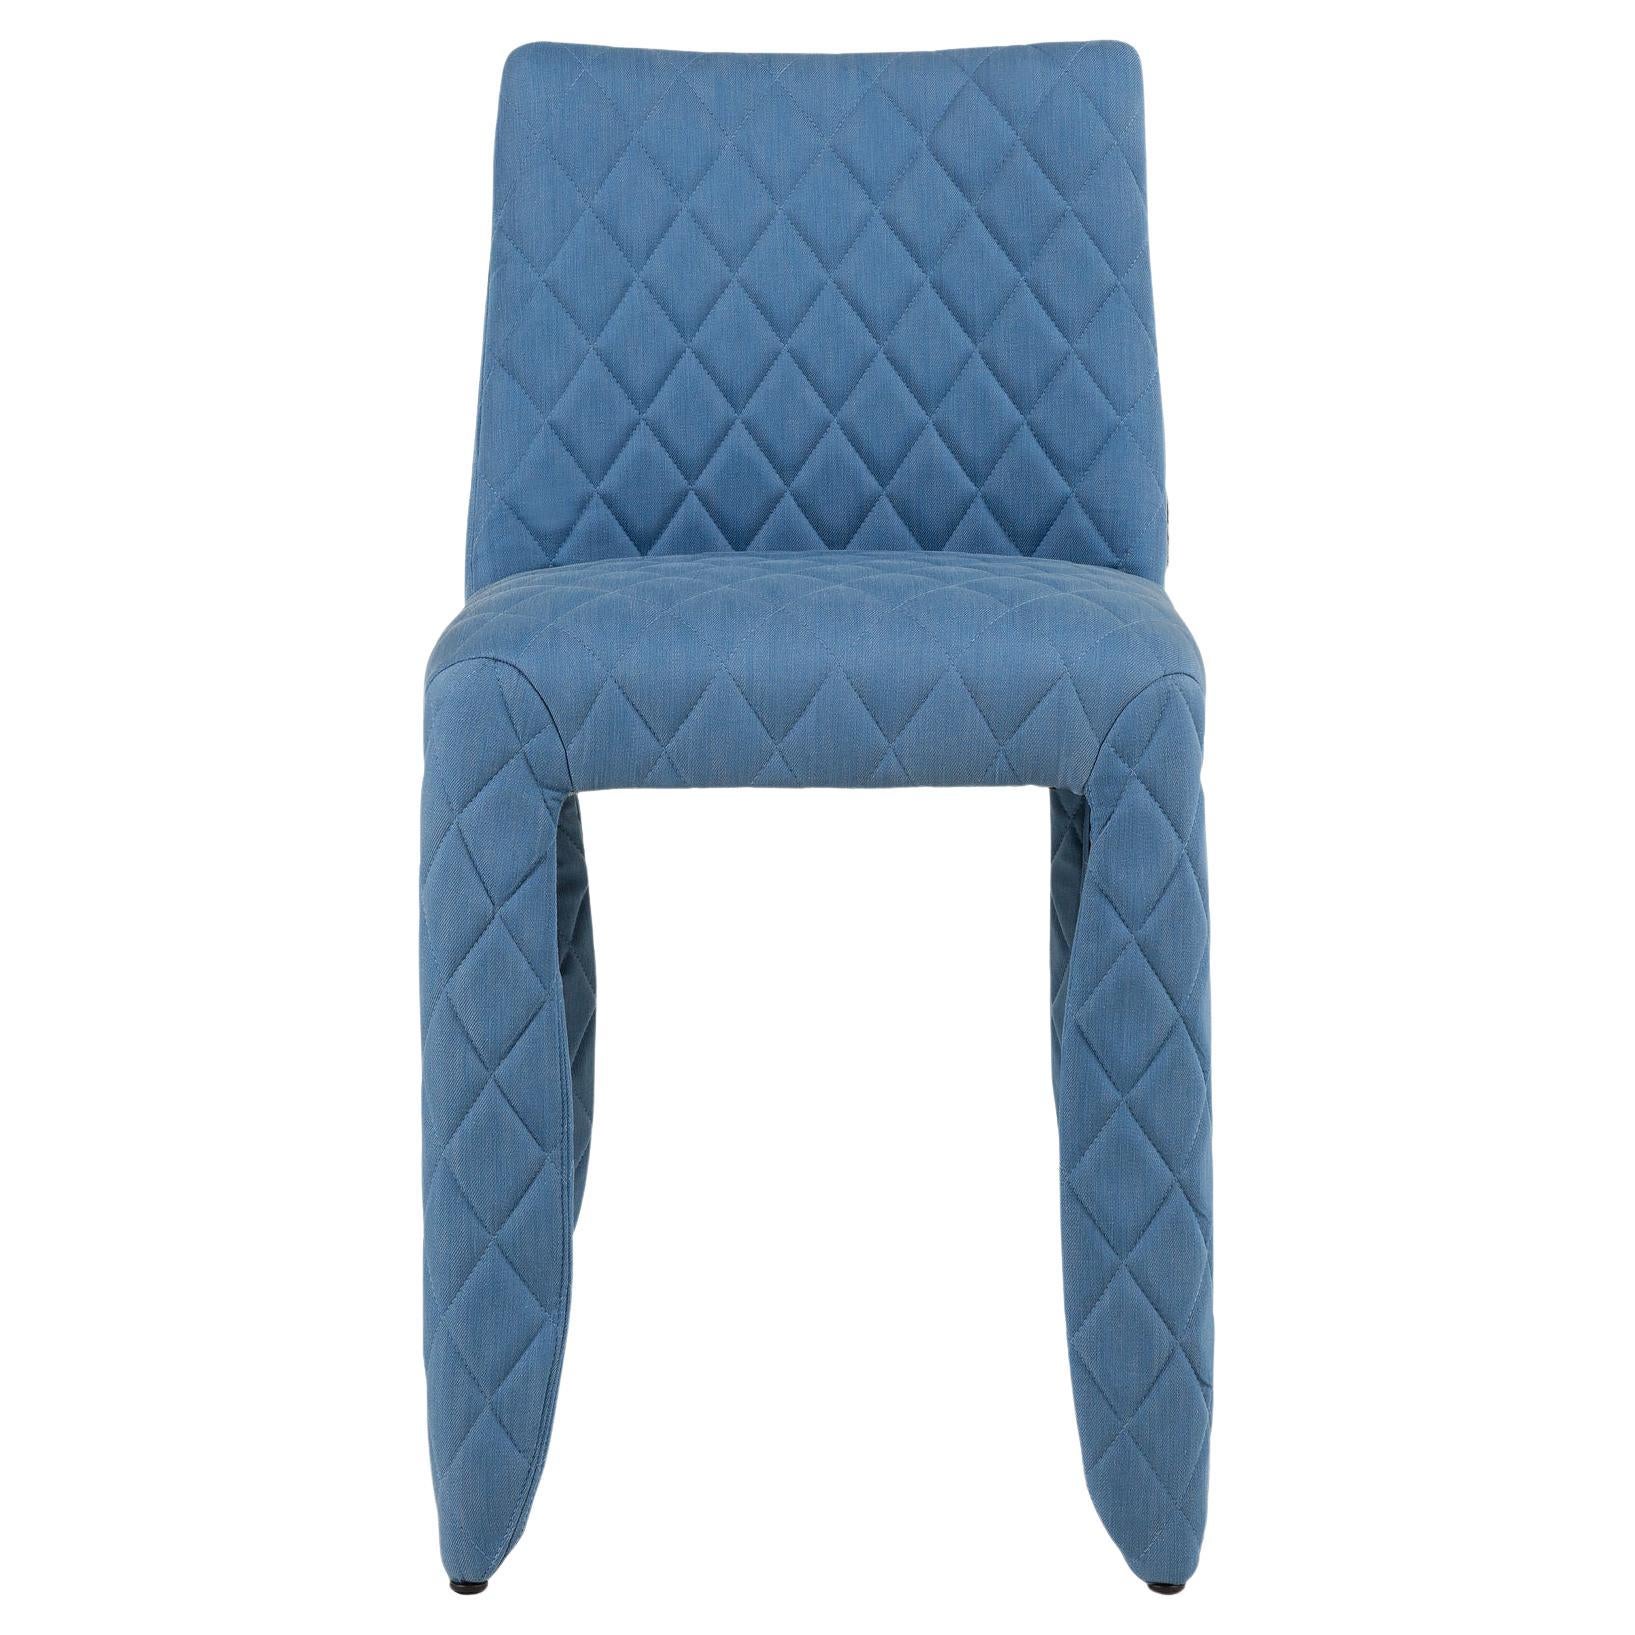 Moooi Monster Diamond Chair in Denim Light Wash Blue Upholstery